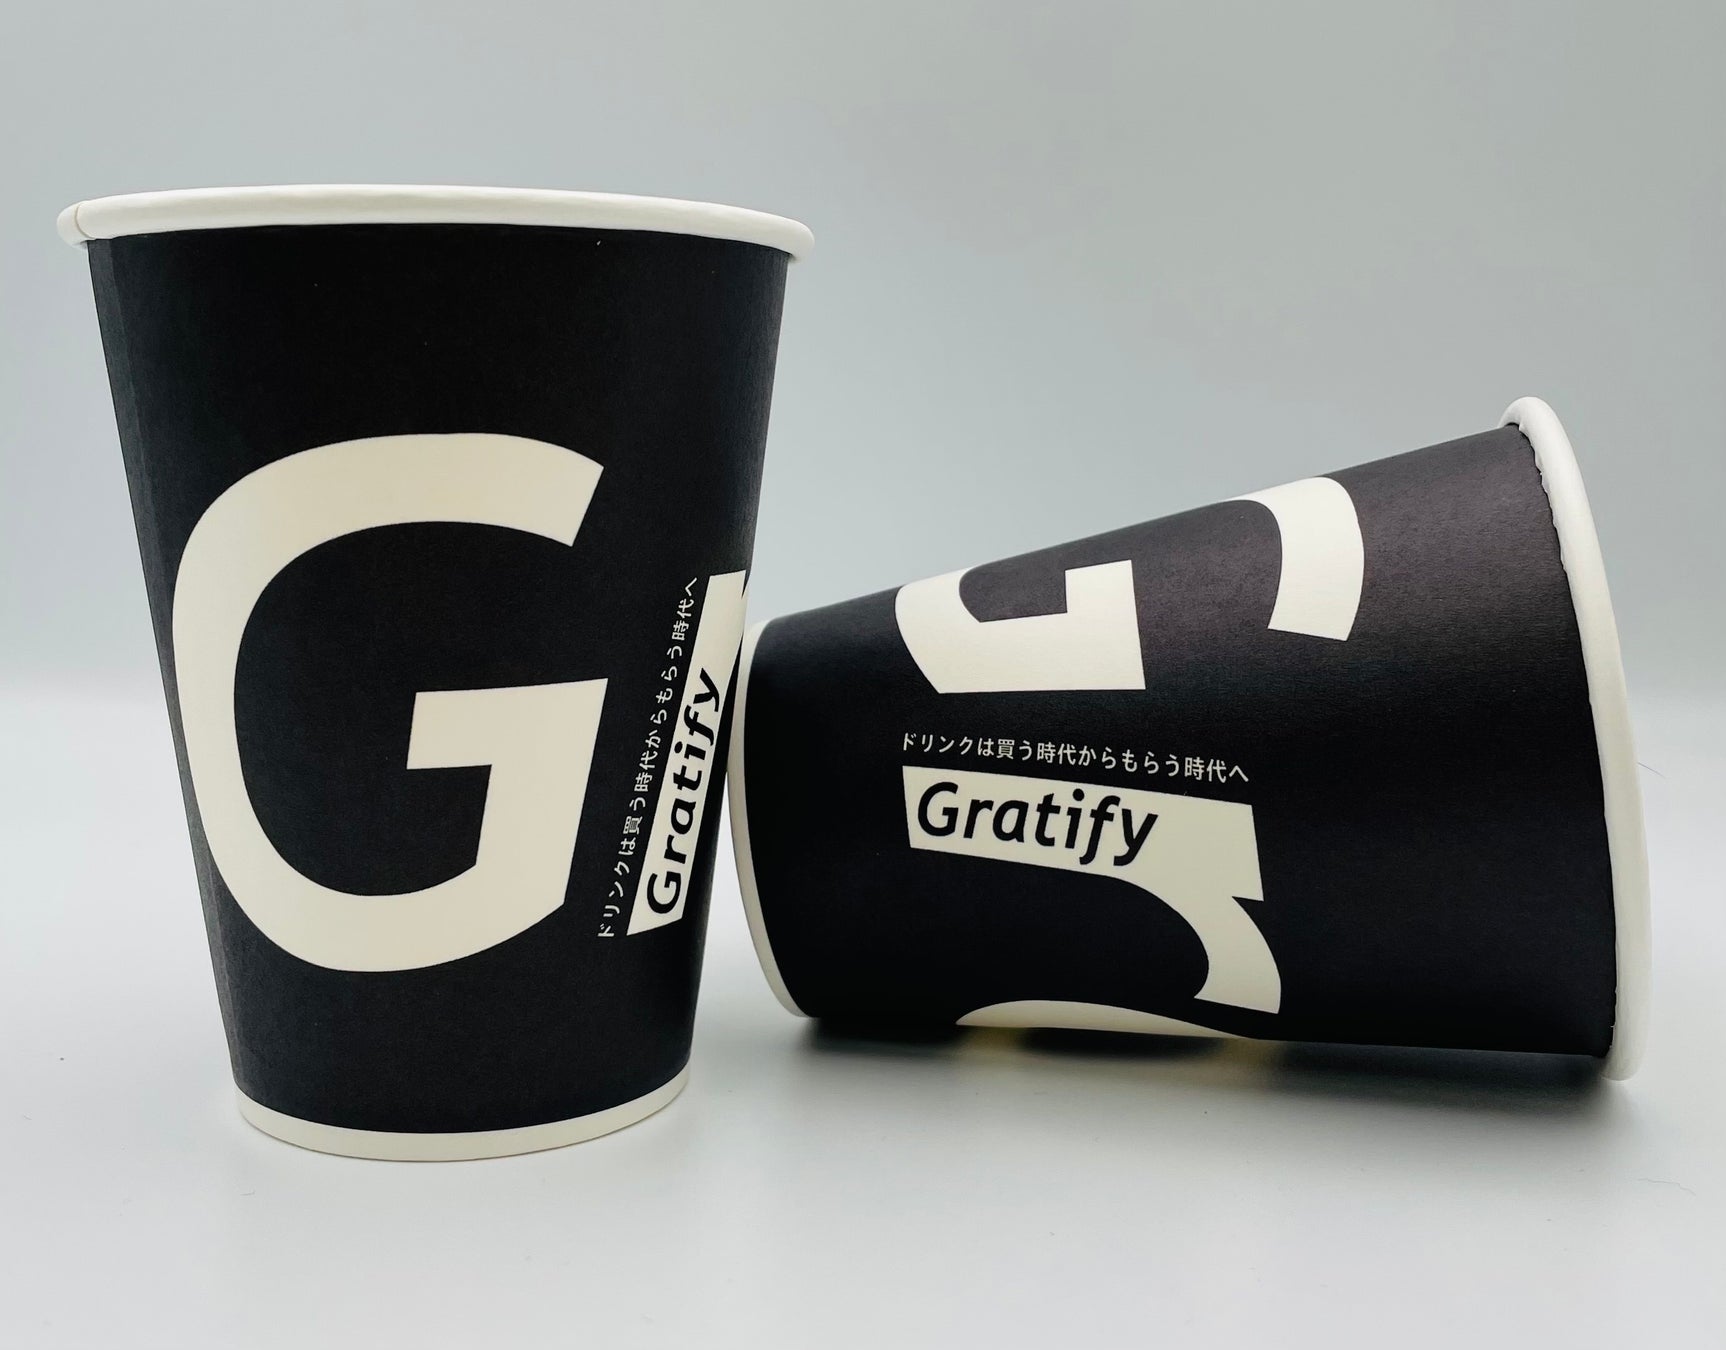 Gratify(グラティファイ)が最高級食パンショップ「ふじ森」にて集客ツールとして導入開始のサブ画像2_紙コップによる企業、サービスの訴求